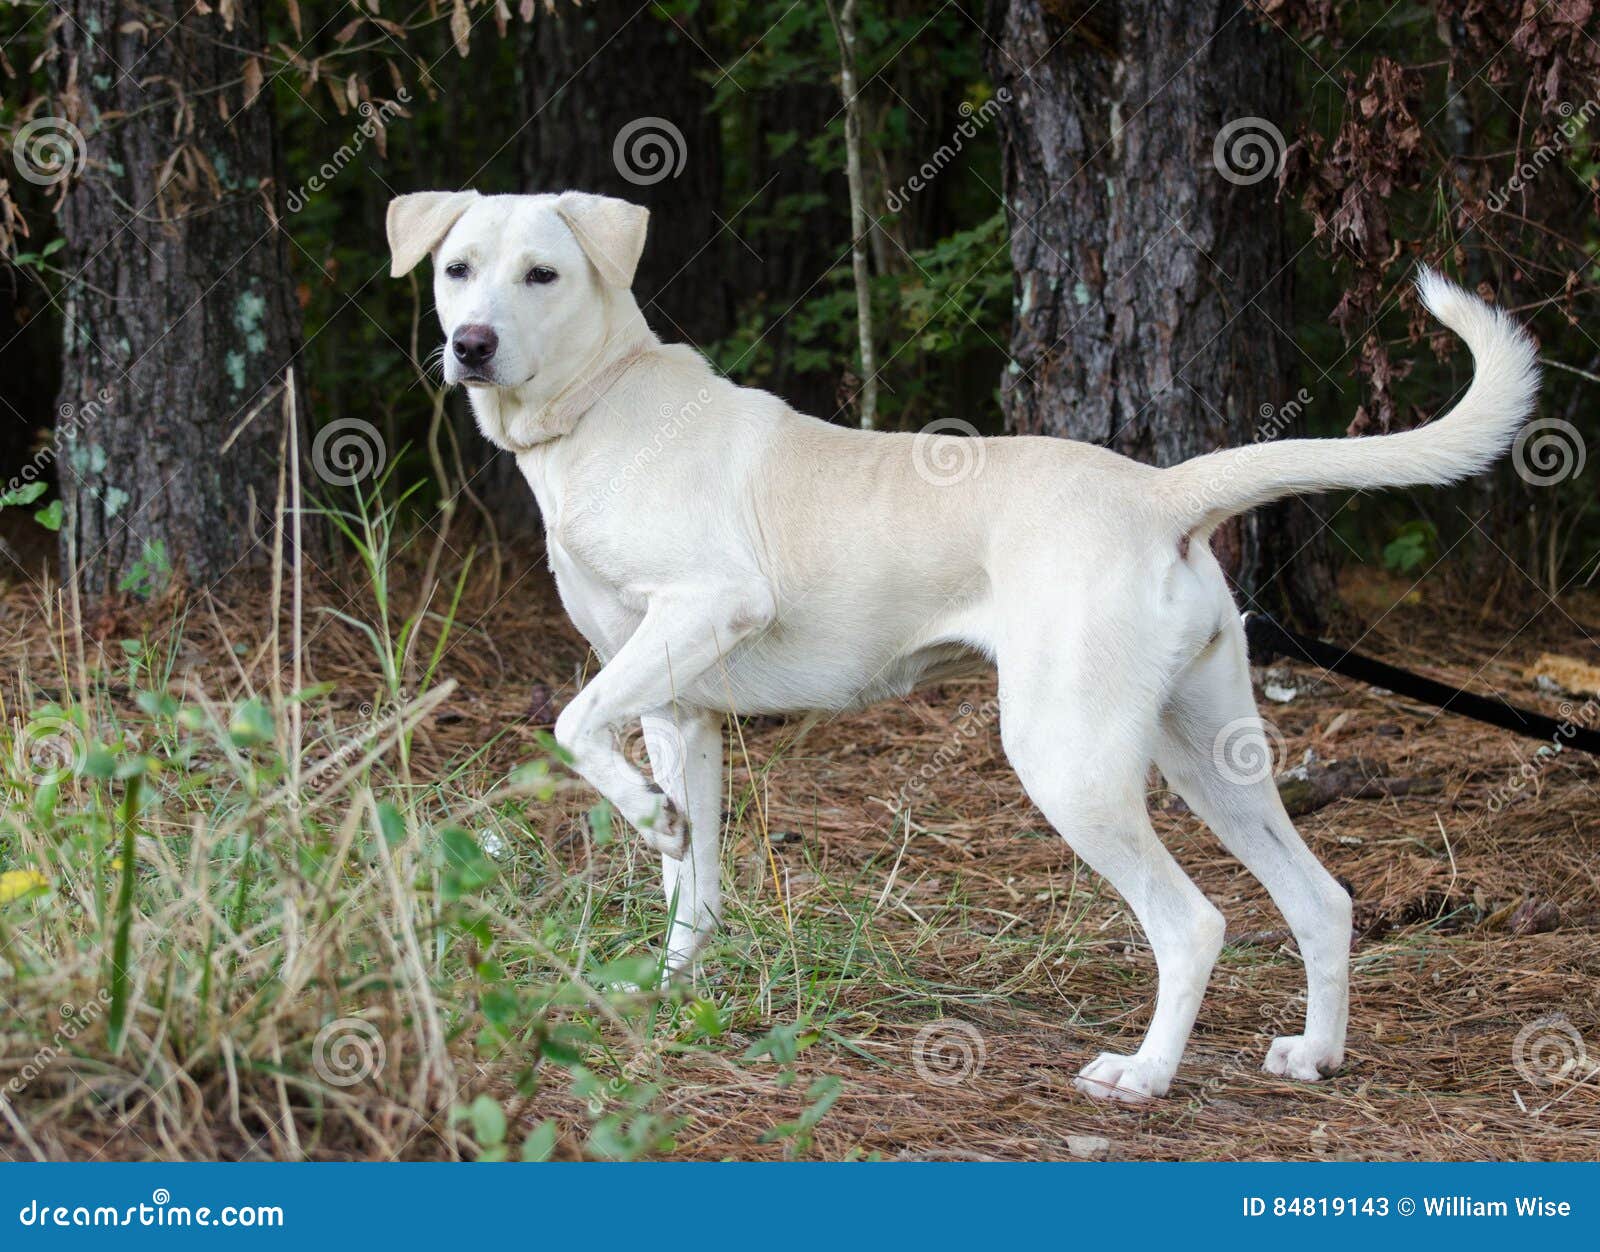 are labrador retrievers outdoor dogs